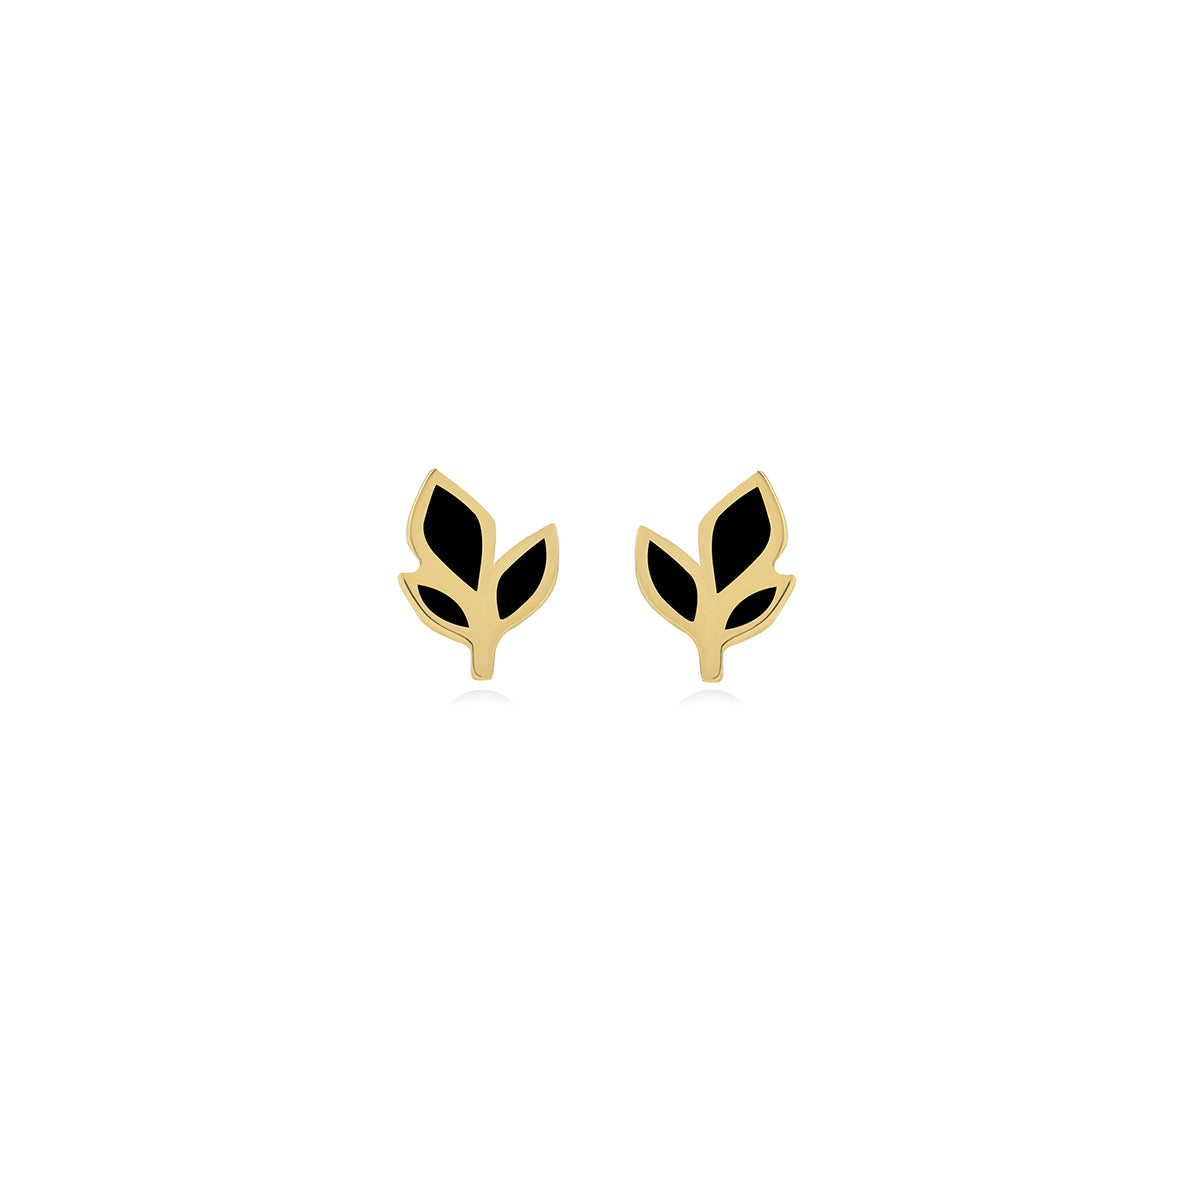 Leaf Shape Earrings in 18k Yellow Gold